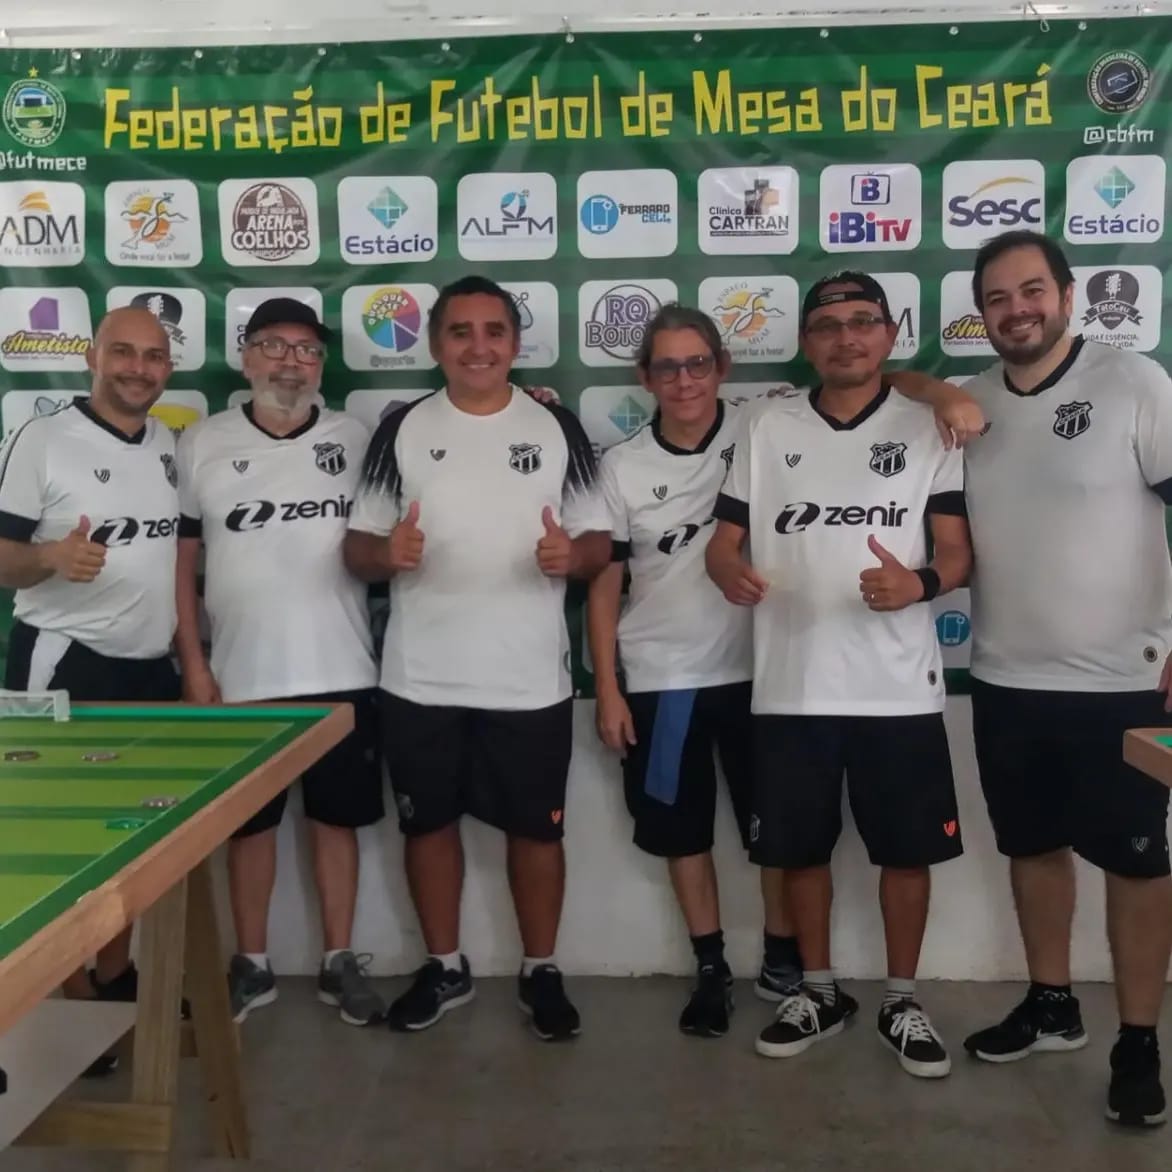 Ceará participou da 1° Etapa do Campeonato Cearense de Futebol de Mesa